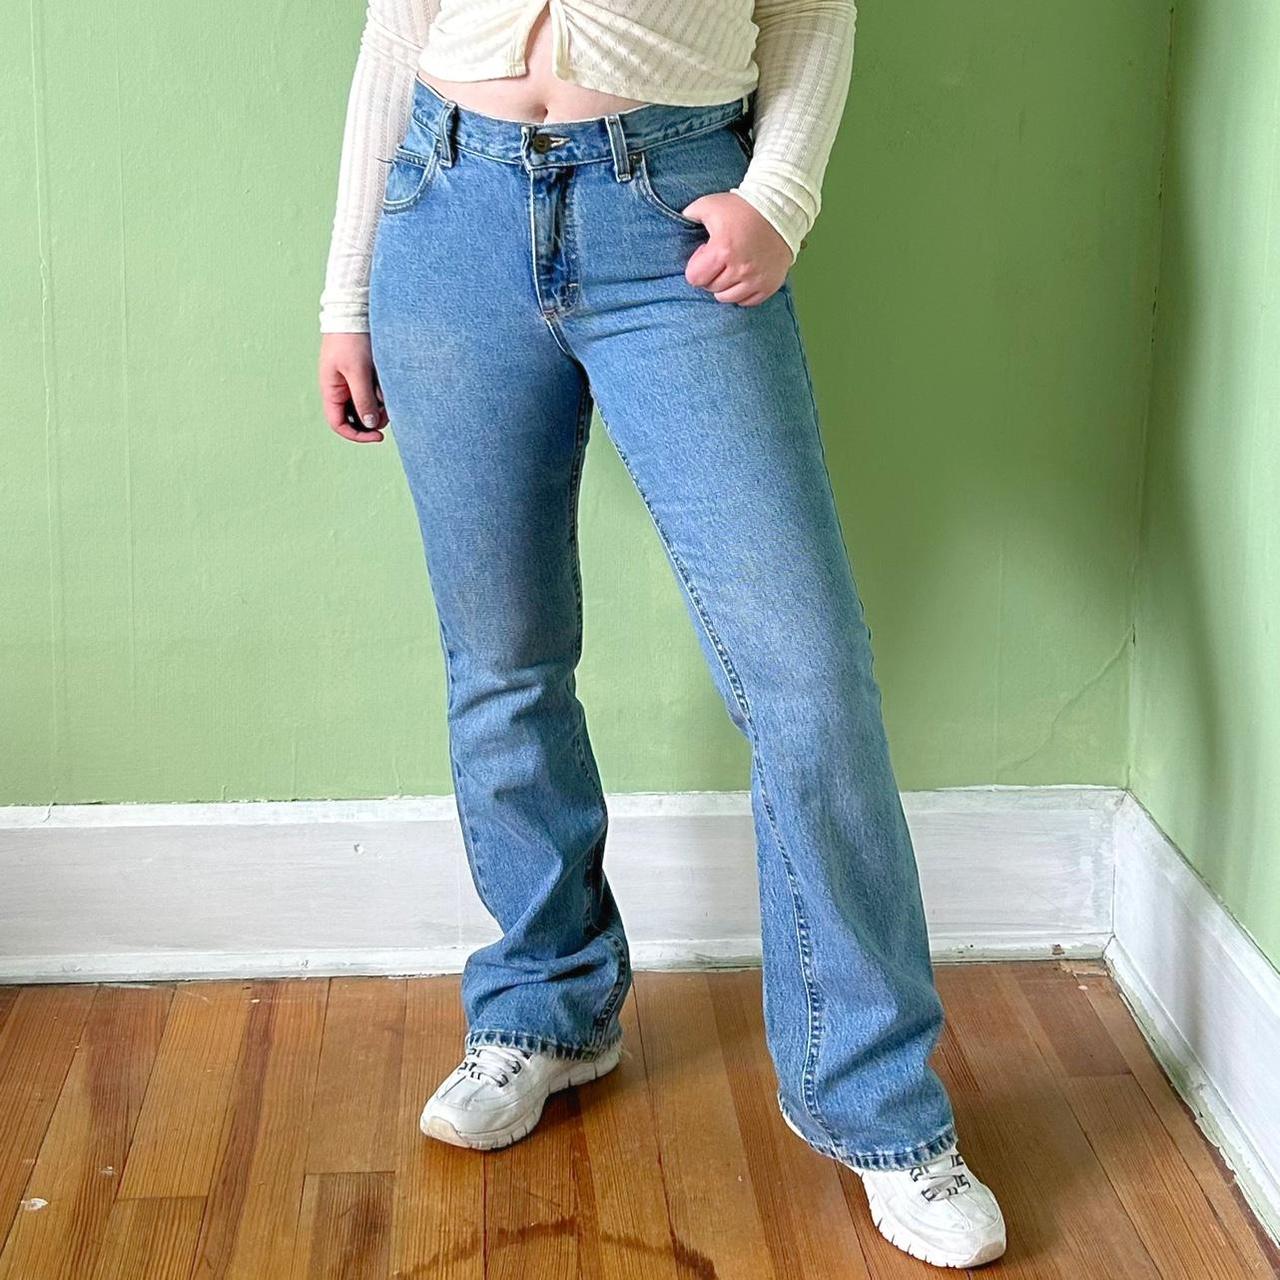 Retro Y2K Lee Bootcut Jeans 🔥 A beautiful pair of... - Depop